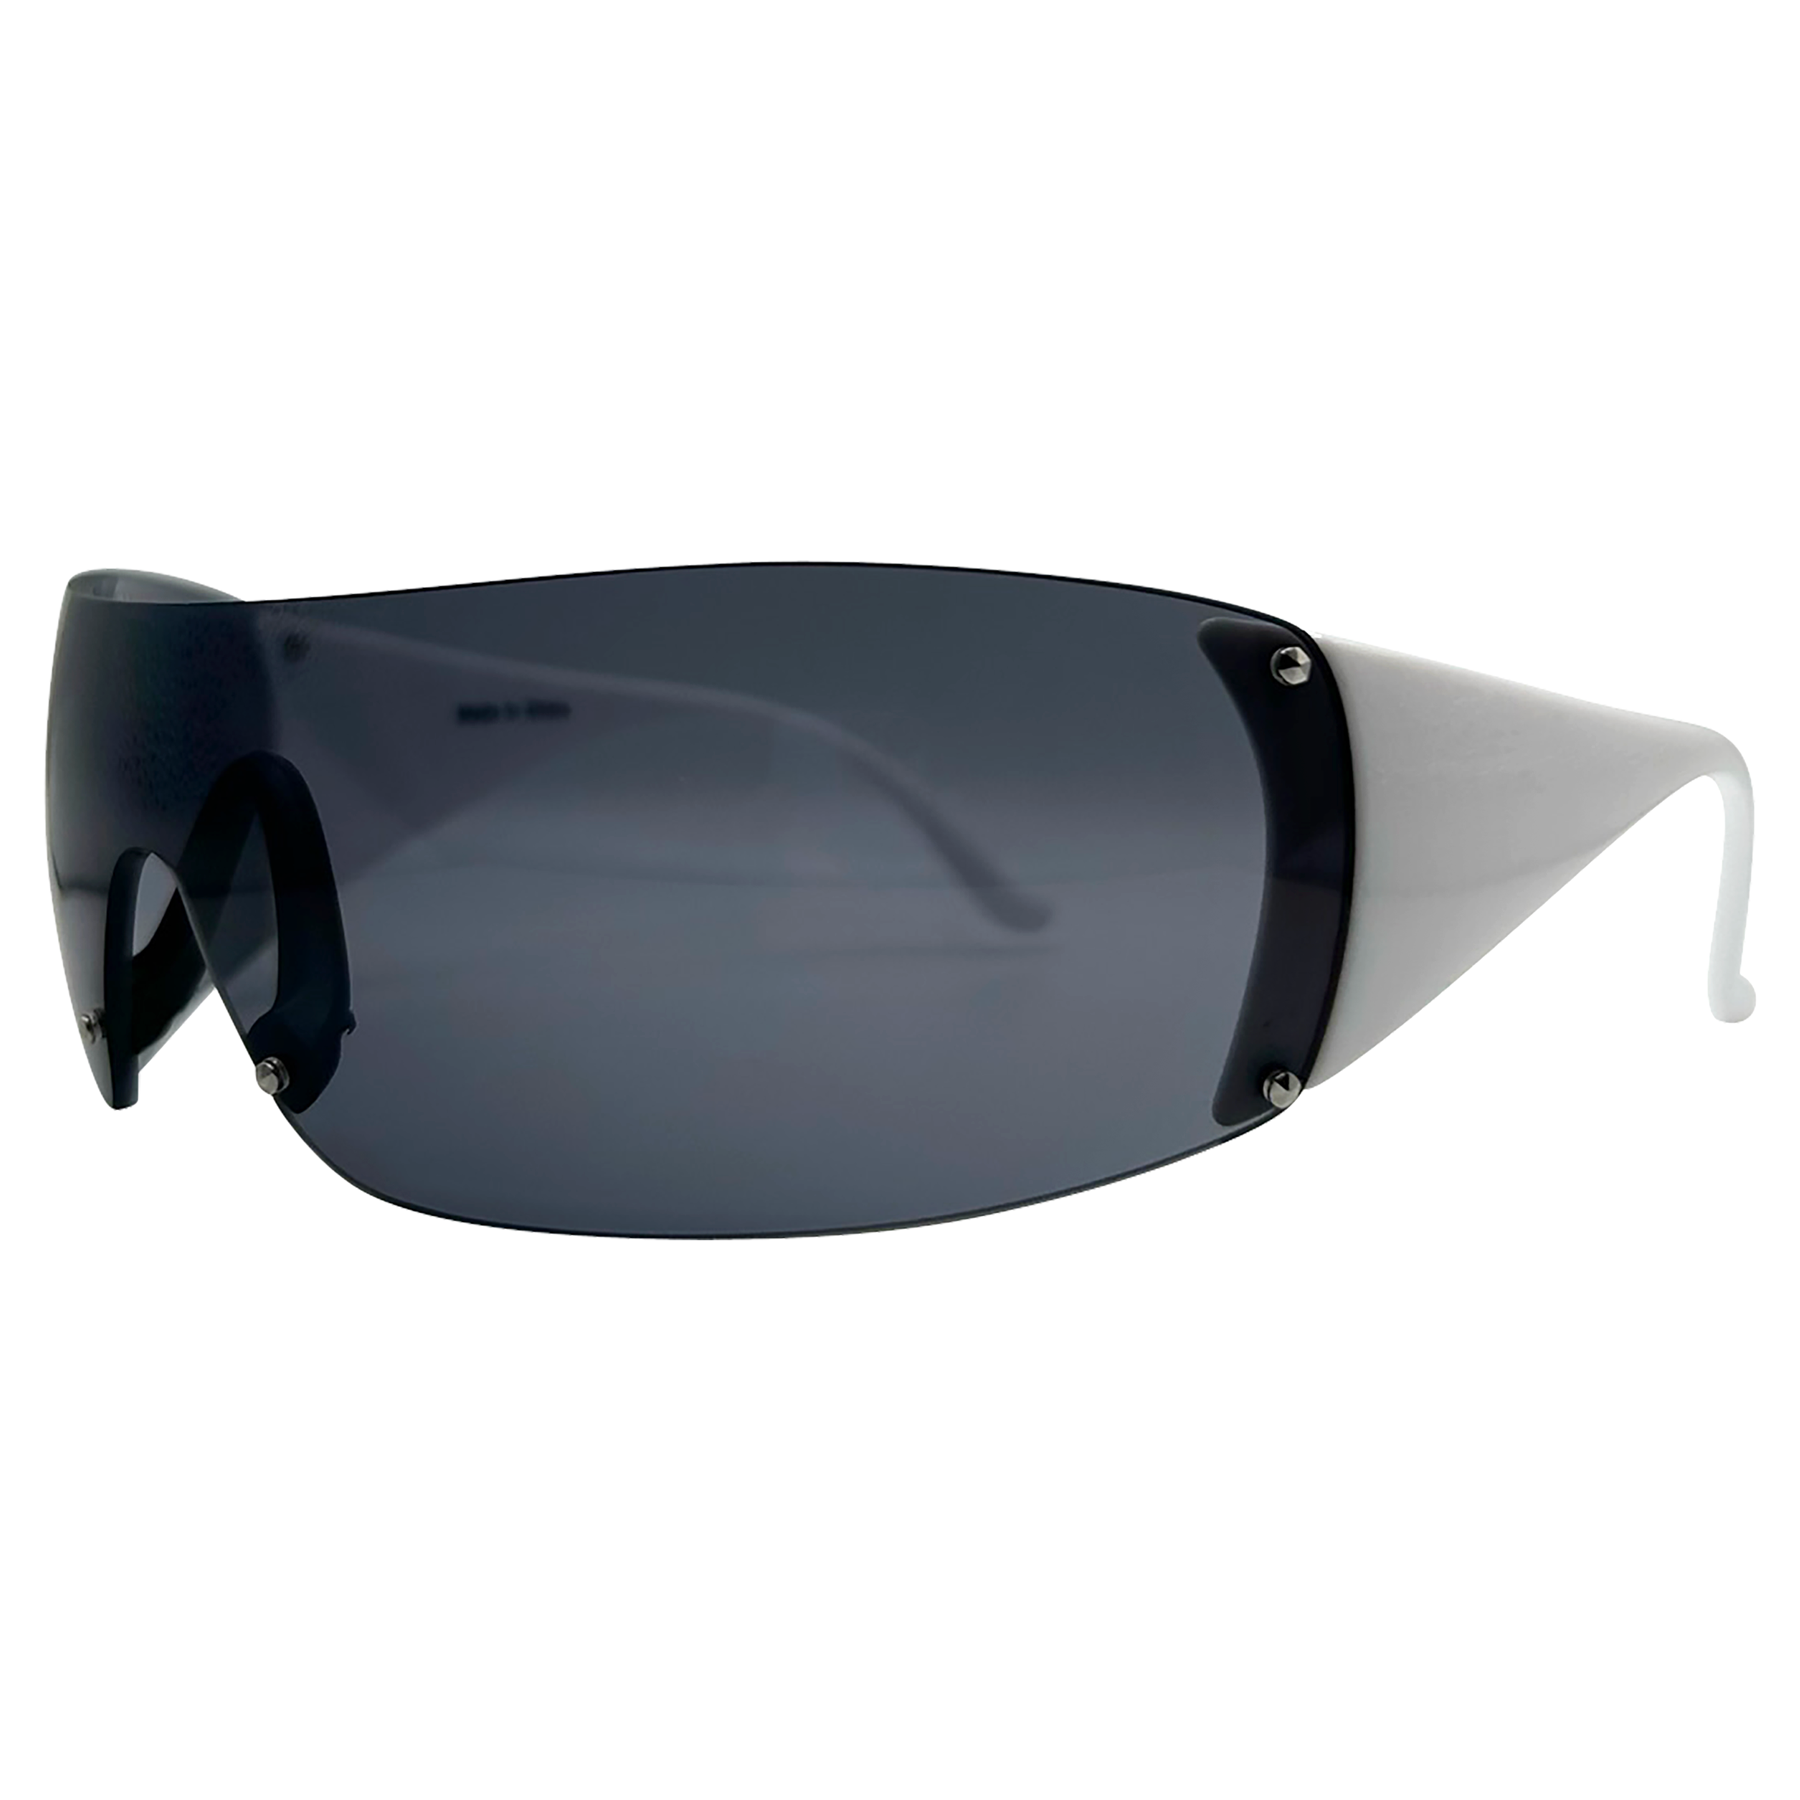 ZIPPER Shield Sunglasses *As Seen On: Blue Ivy Carter & Paris Hilton*